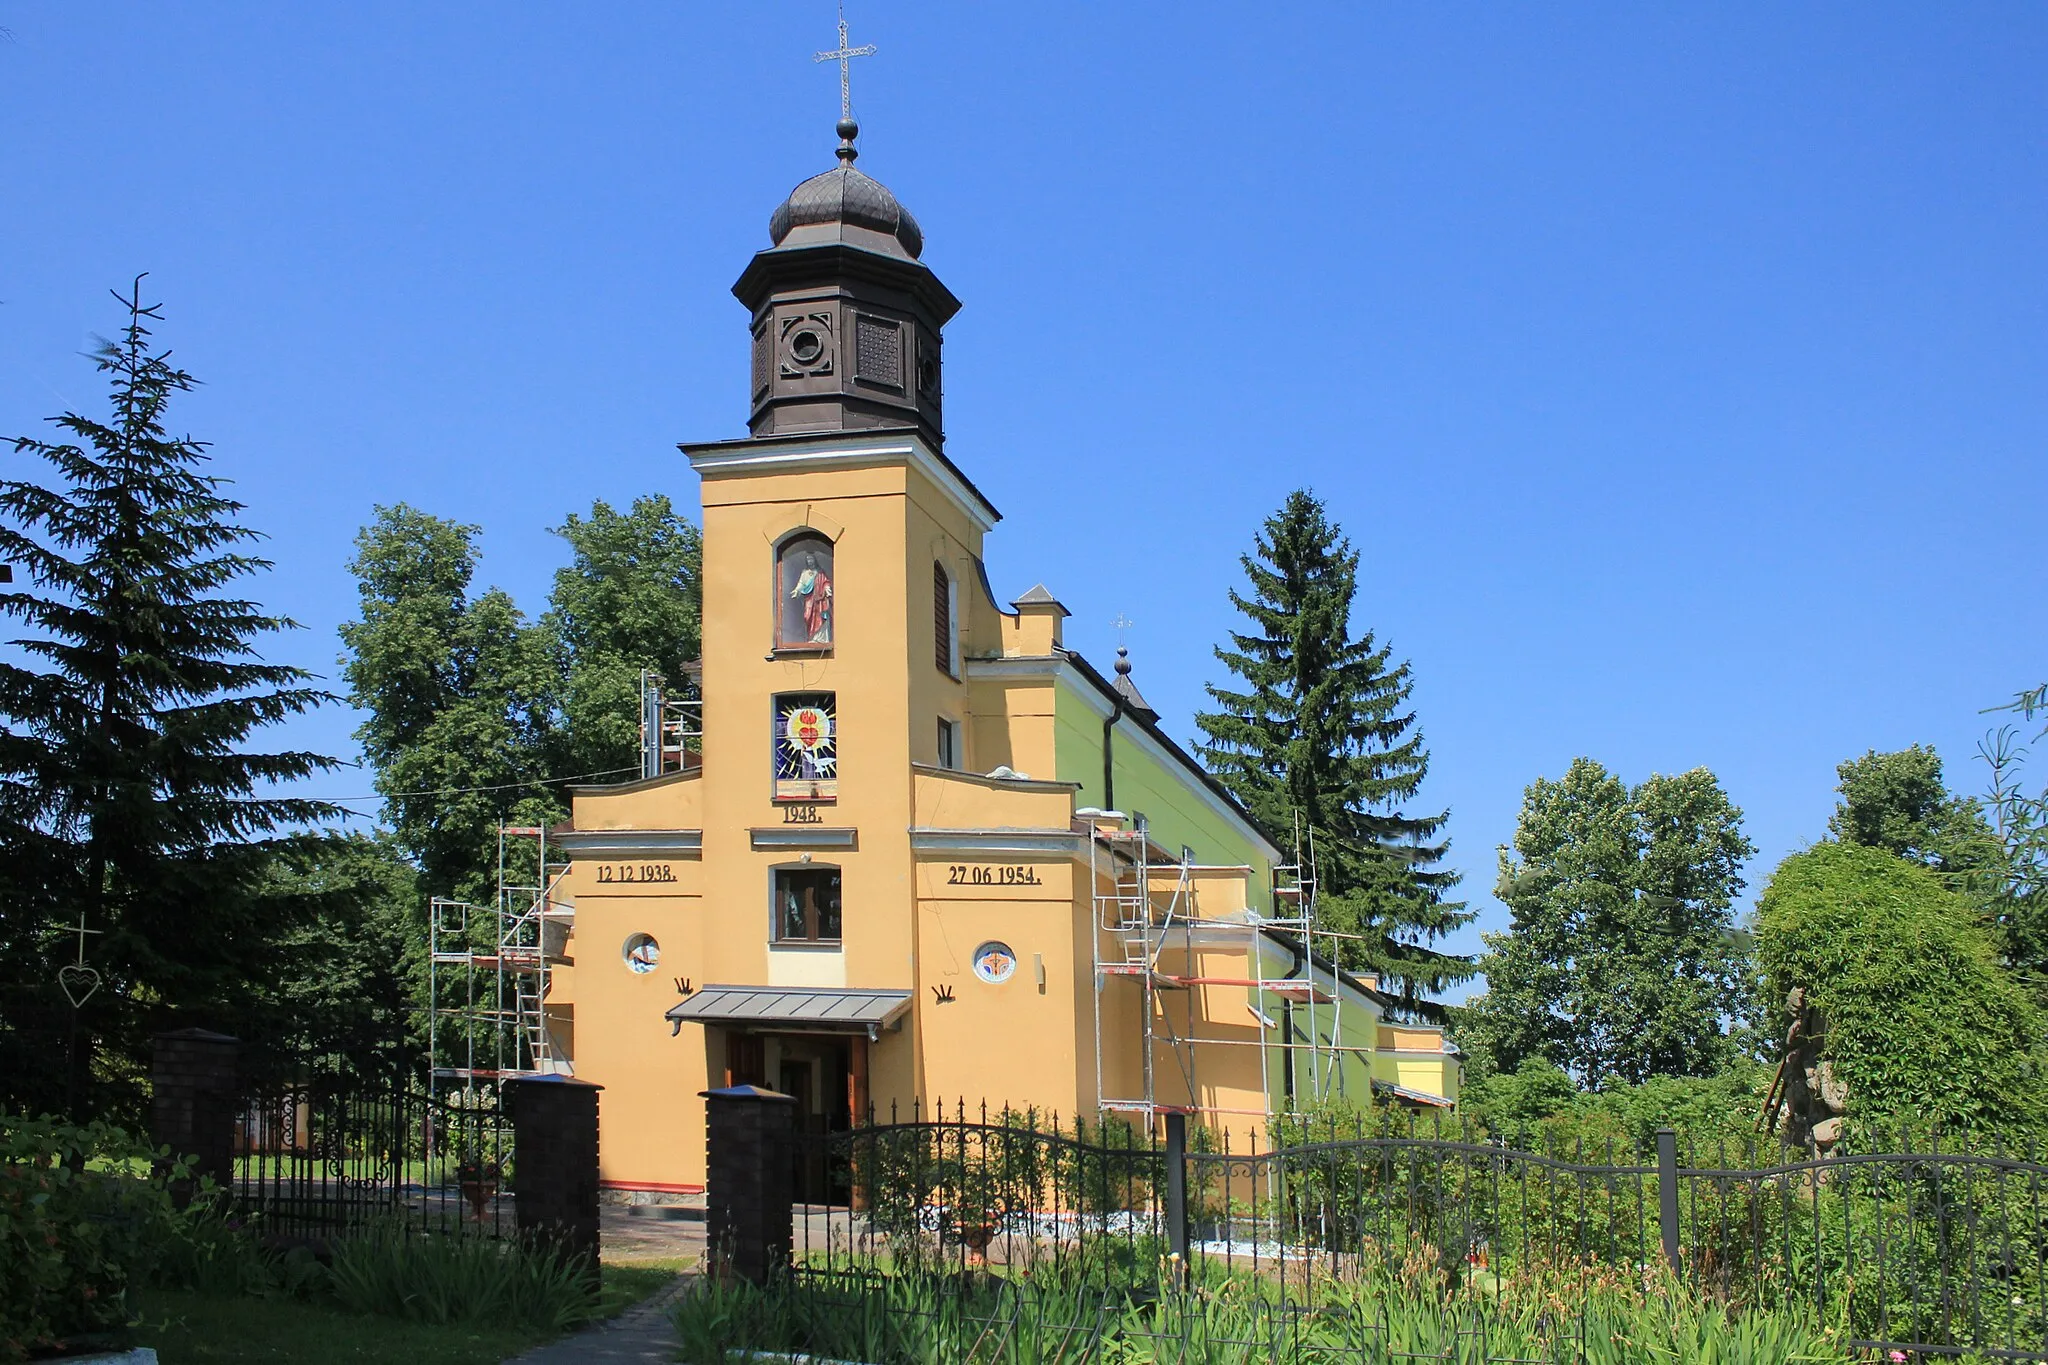 Photo showing: Kościół pw. Najświętszego Serca Jezusowego w Krzymoszach w województwie mazowieckim, w powiecie siedleckim, w gminie Mordy.